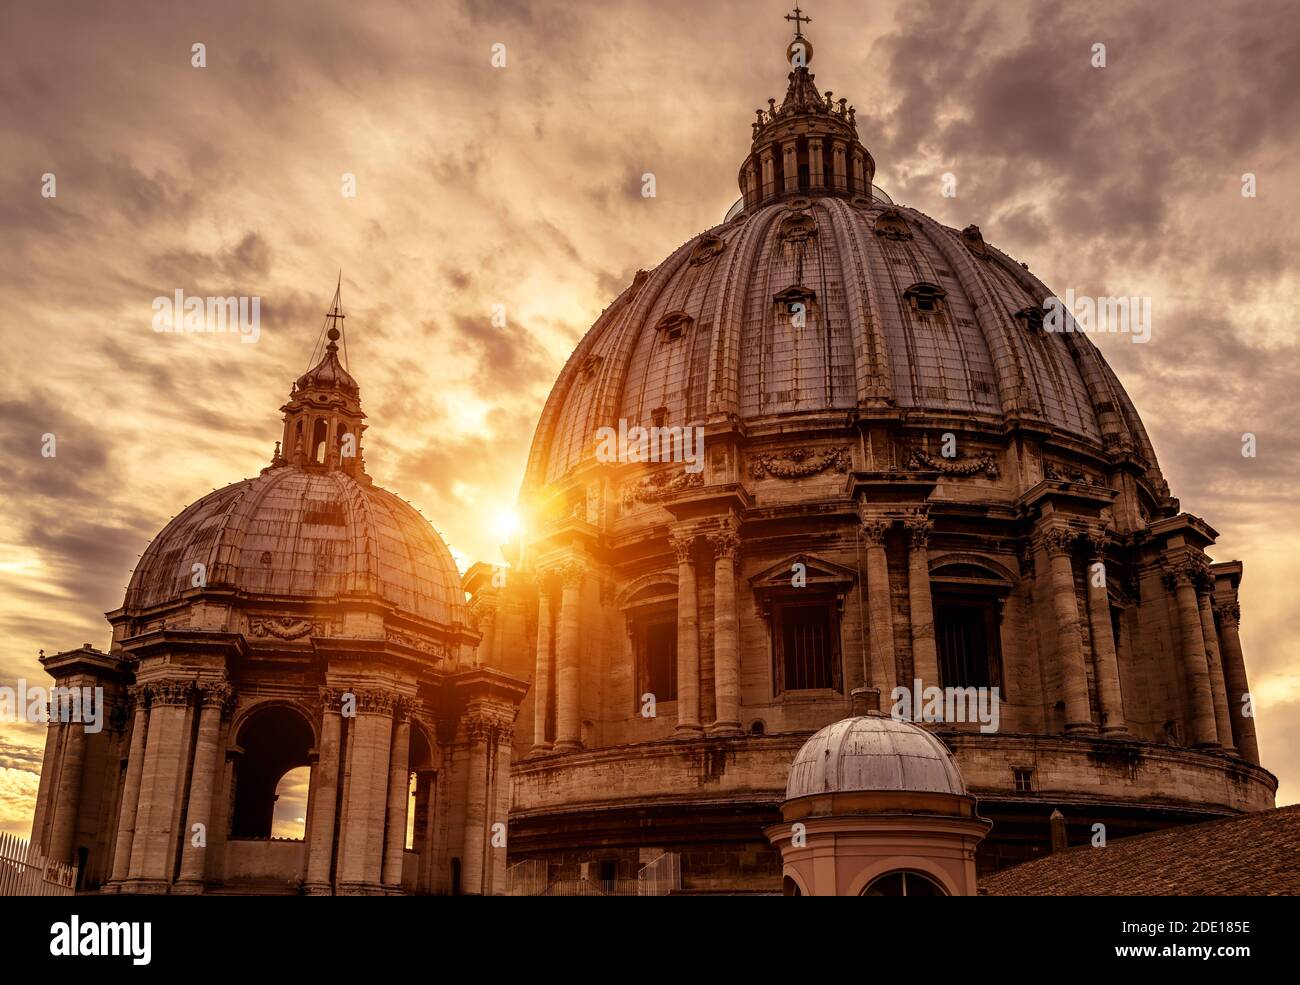 Petersdom (San Pietro) bei Sonnenuntergang in Vatikanstadt, Rom, Italien. Der große Petersdom ist ein berühmtes Wahrzeichen Roms. Sonniger Blick auf Baroq Stockfoto